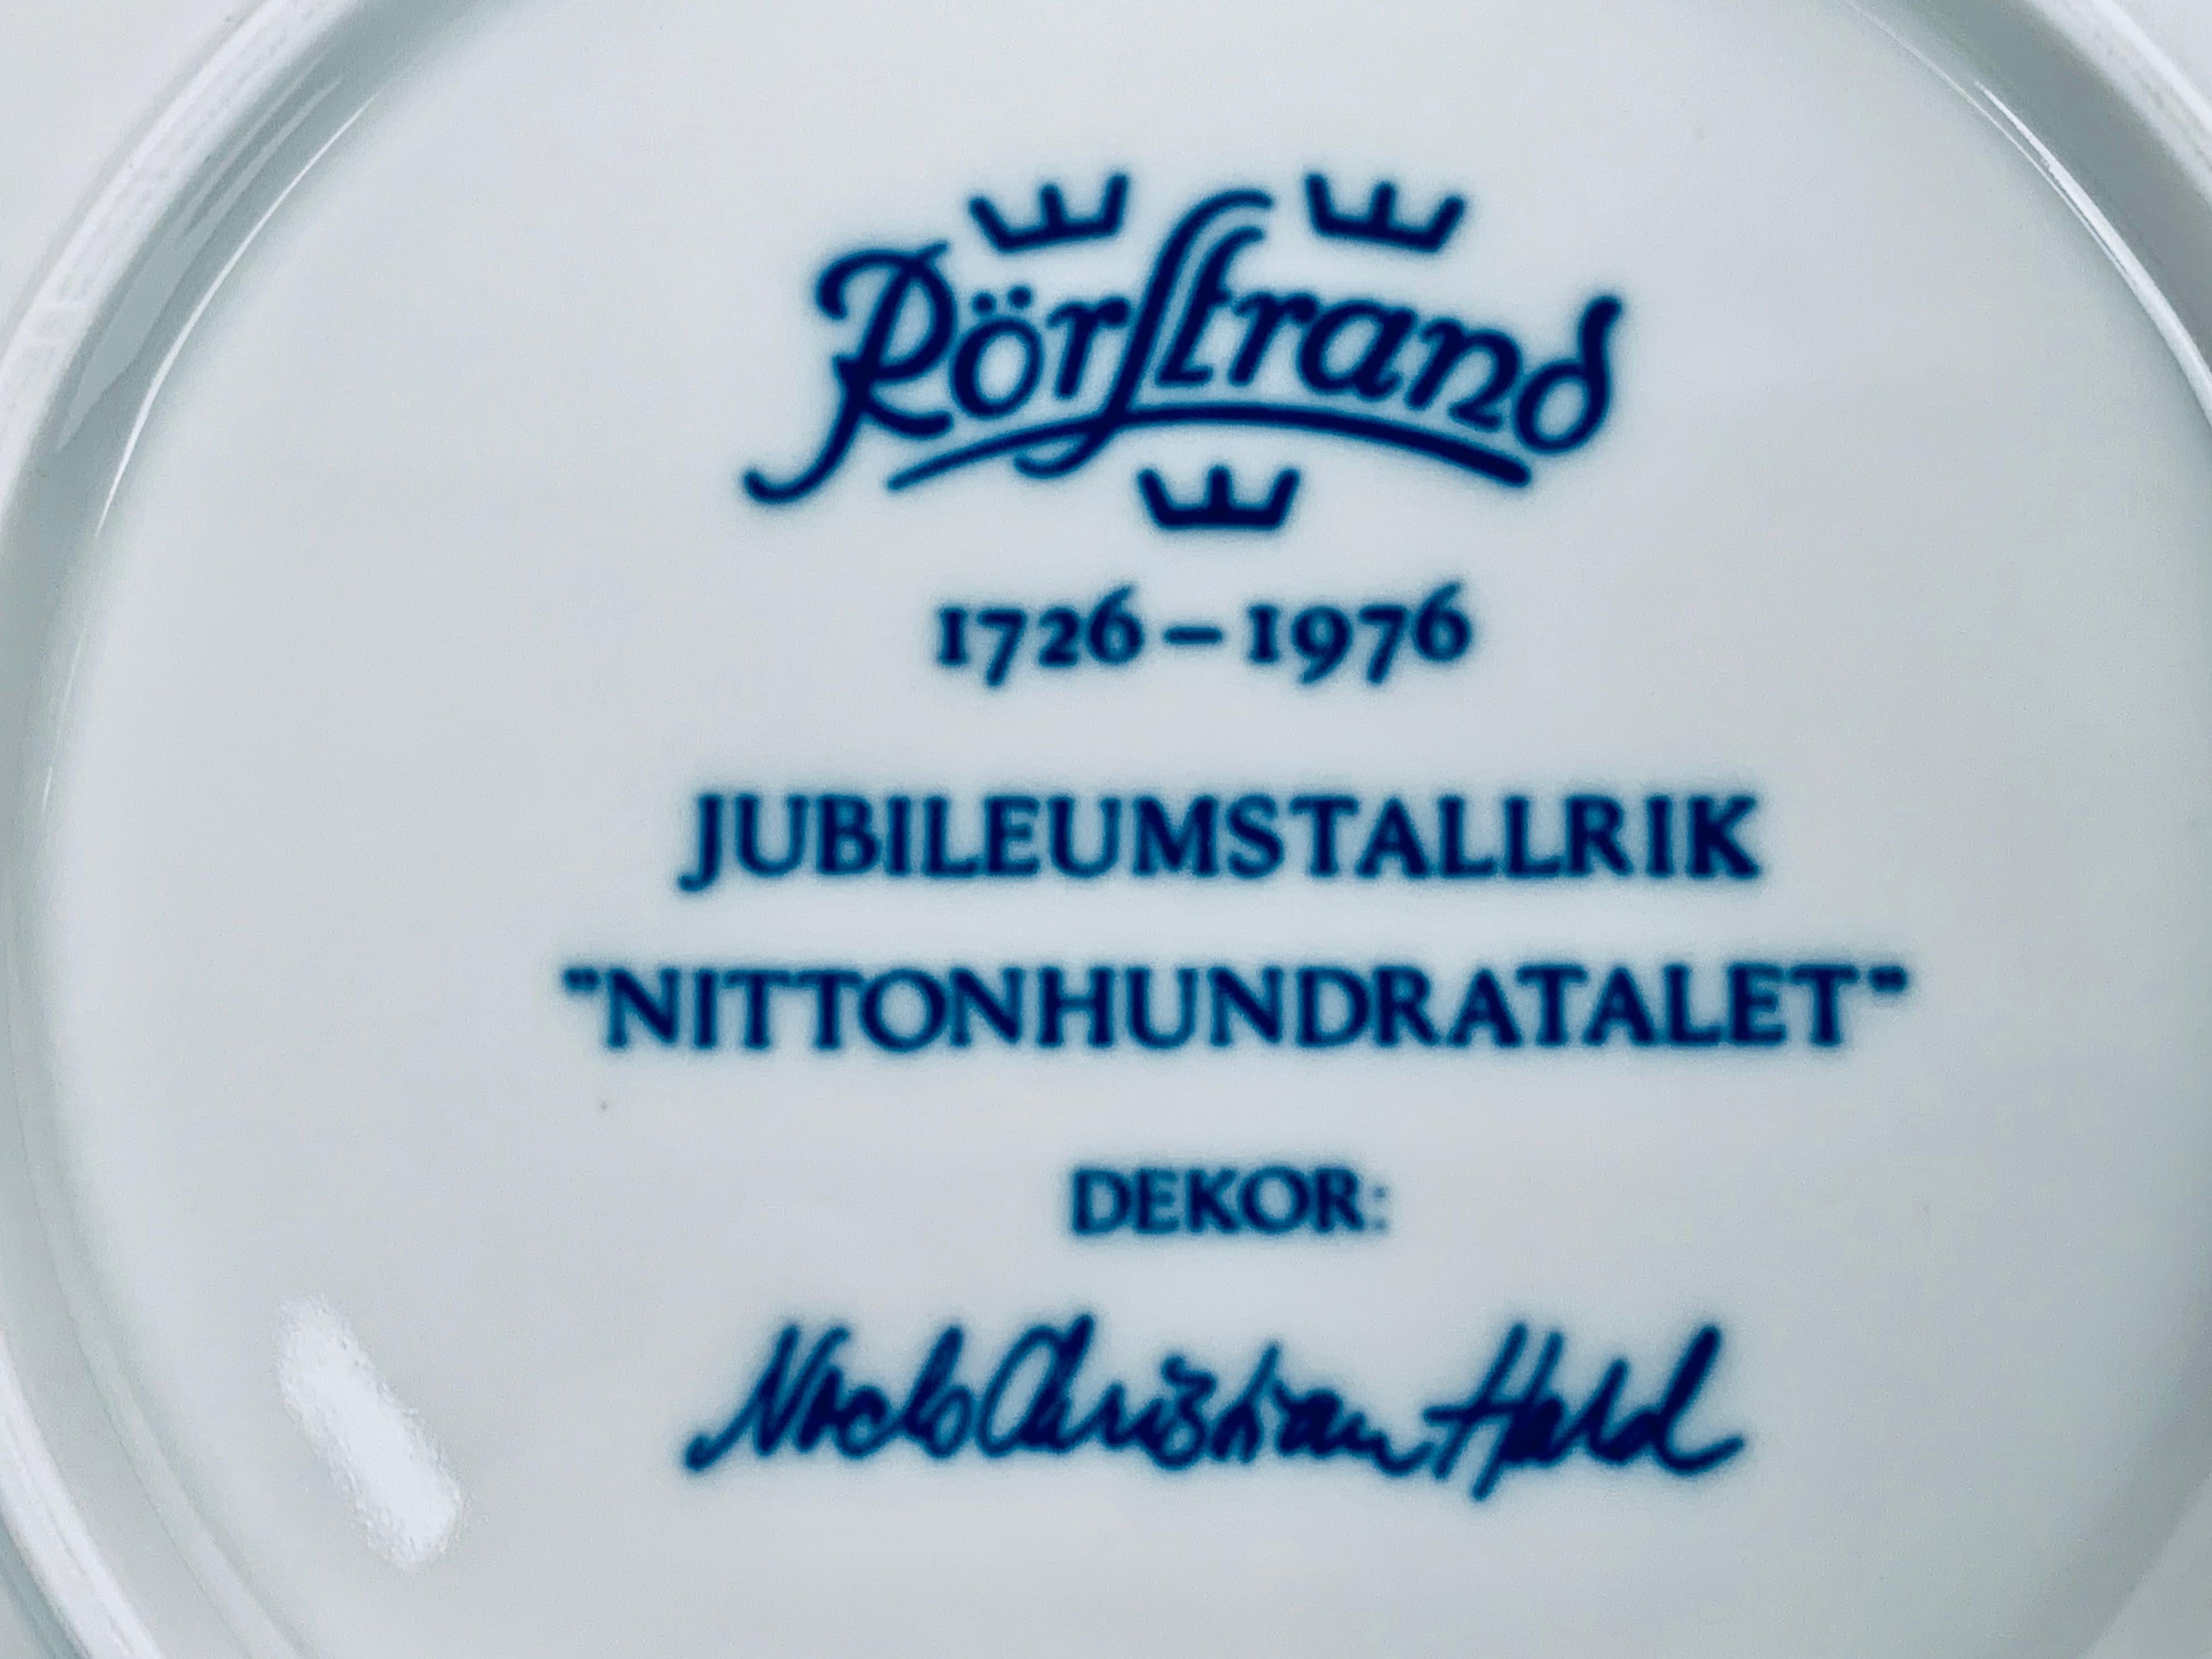 Rörstrand Porcelain Commemorative Plates-Niels-Christian Hald in Blue, Sweden 2